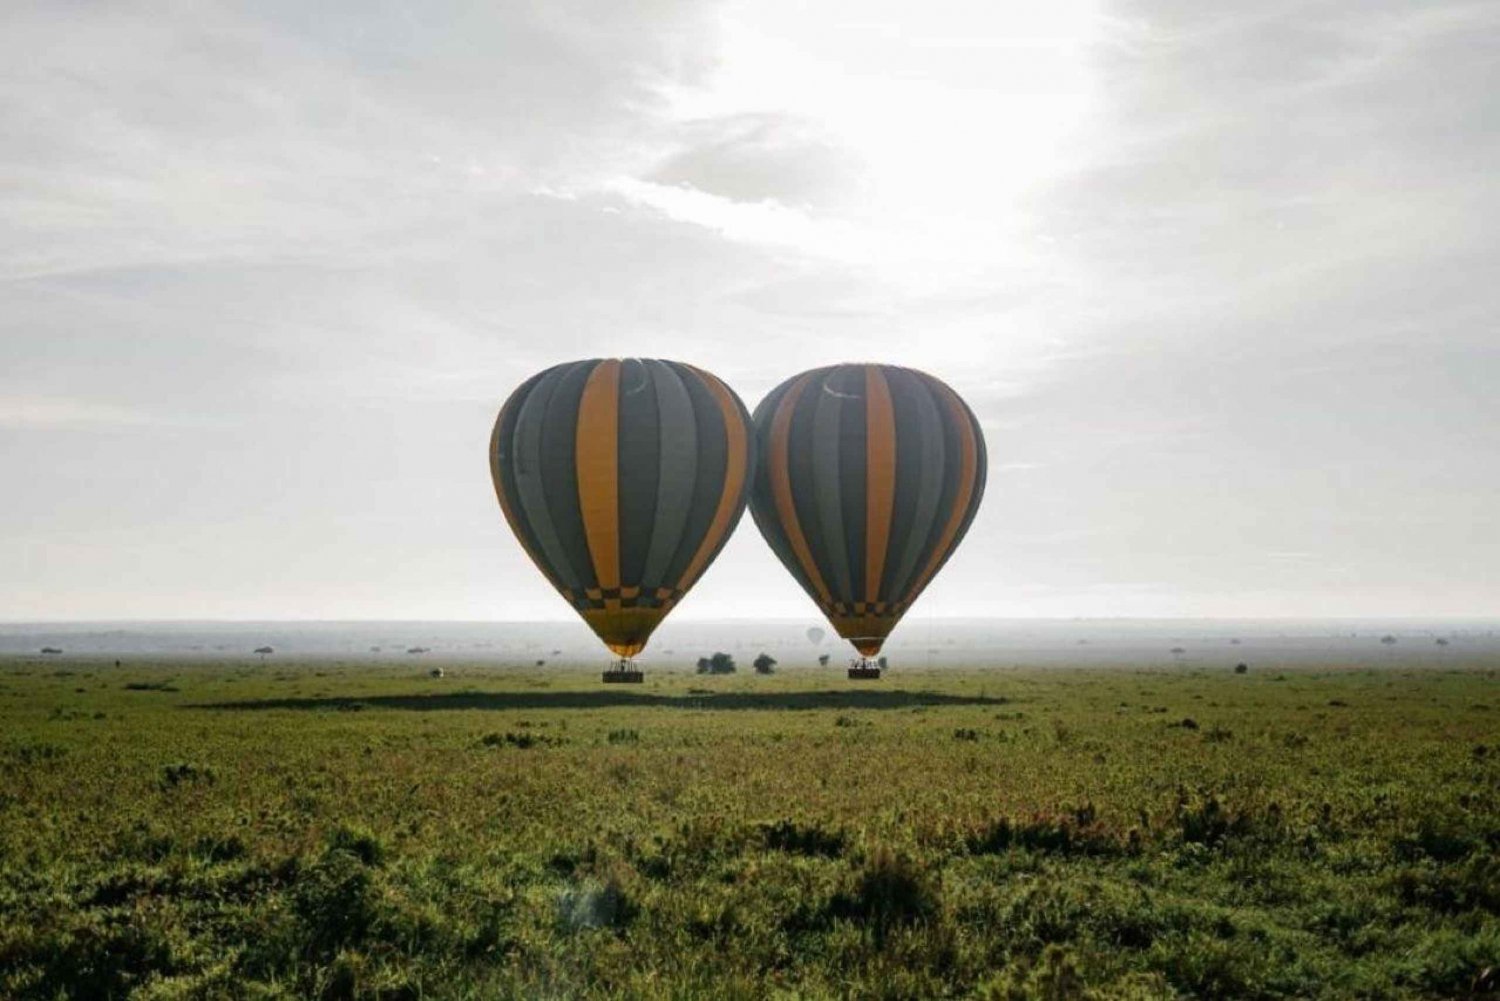 Tarangire, Serengeti, Ngorongoro:4Days Africa Classic Safari